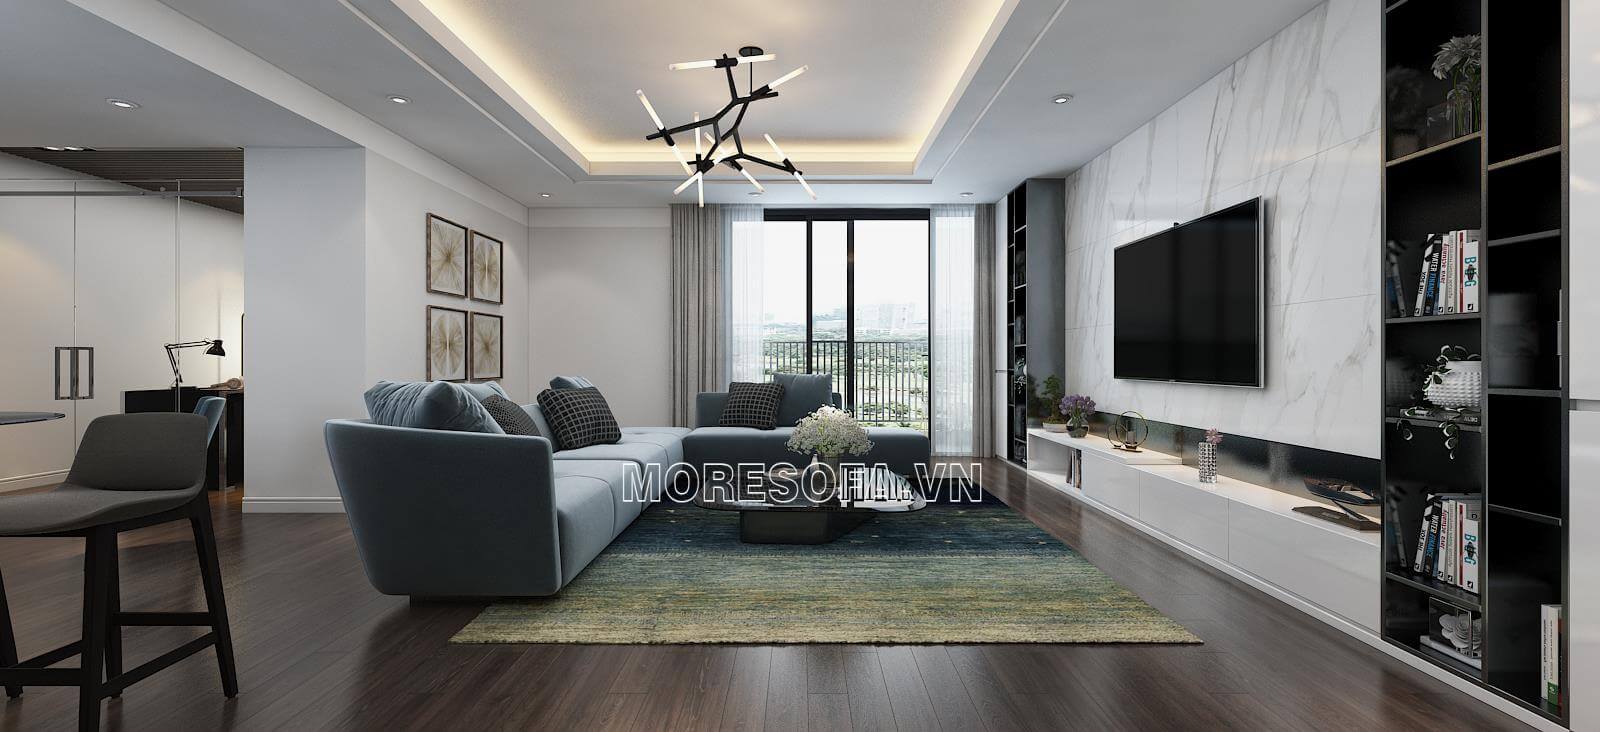 Thiết kế nội thất phòng khách hiện đại đẹp cho biệt thự với bộ sofa bọc nỉ cao cấp màu xanh lam